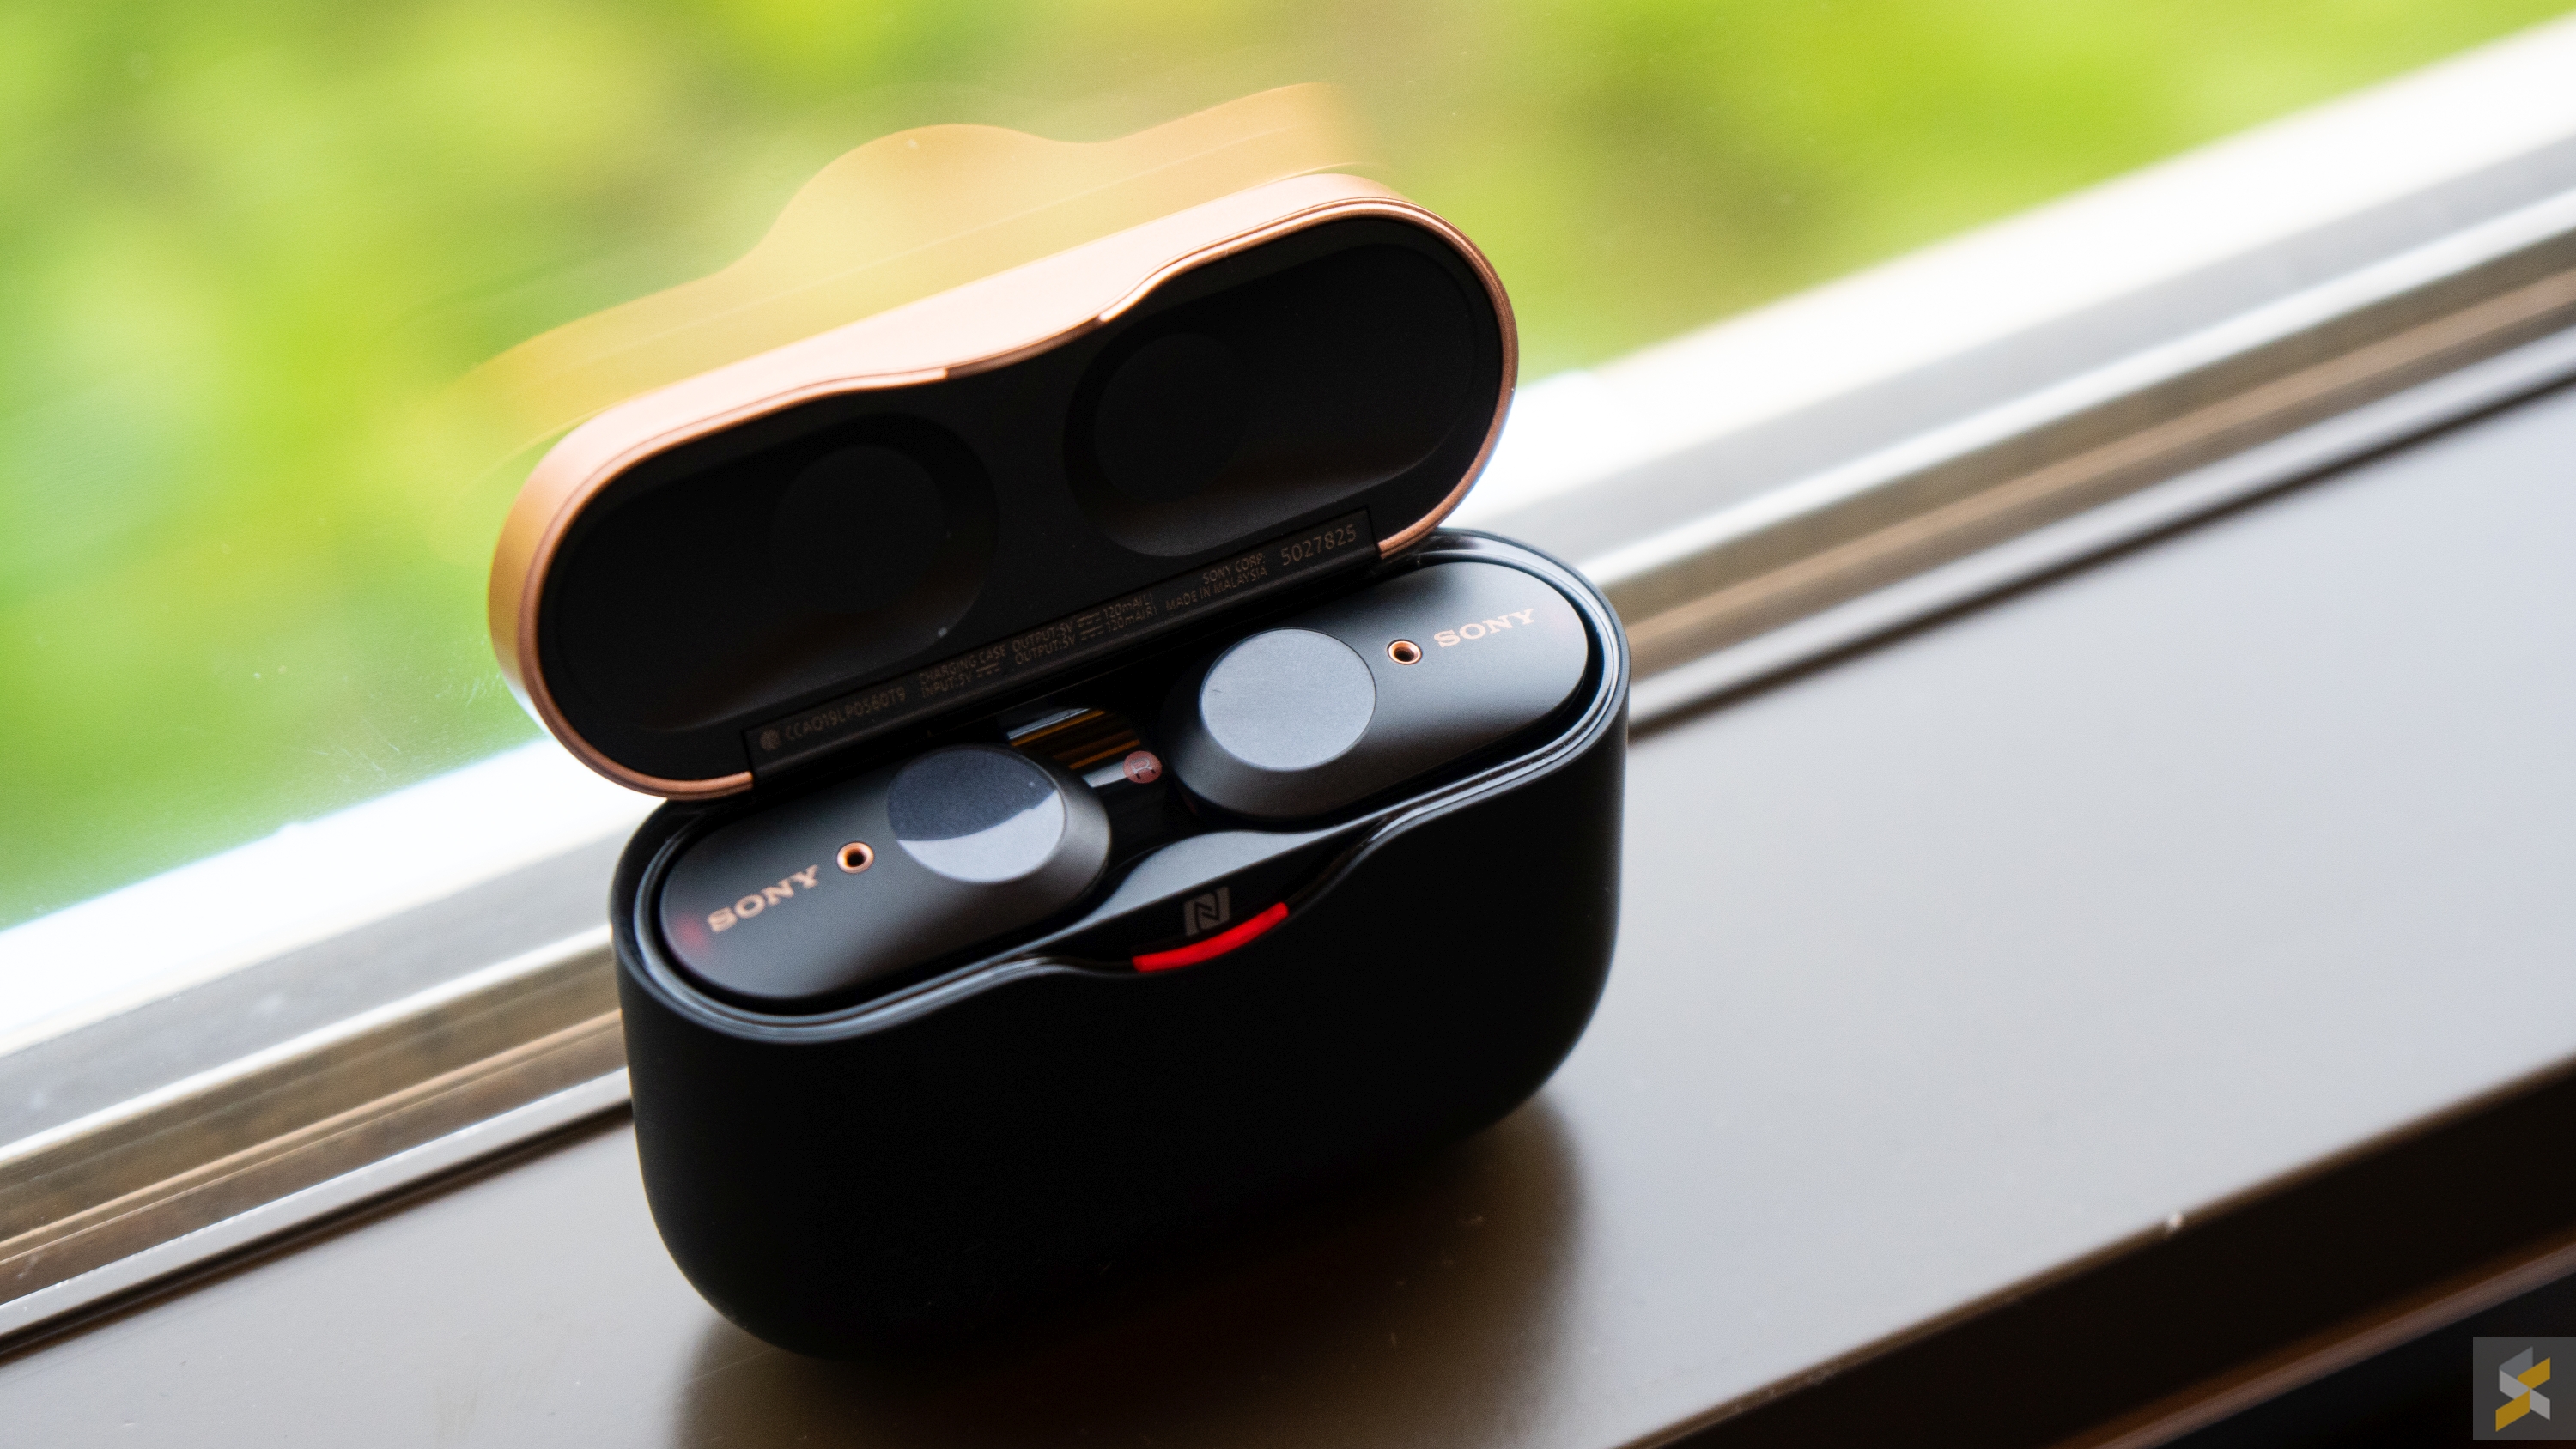 Sony WF-1000XM3 review: The best truly wireless headphones? - SoyaCincau